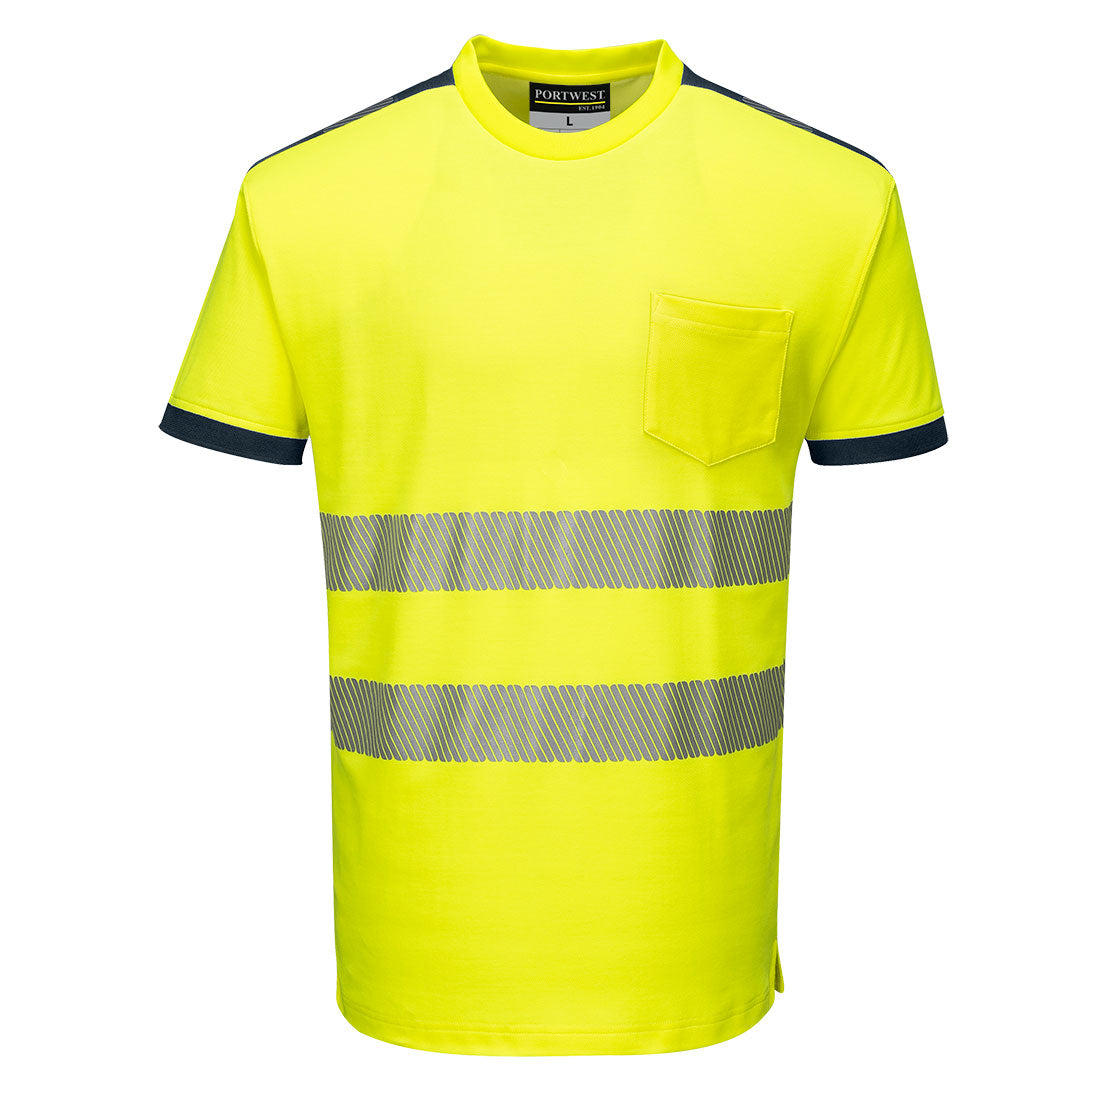 Portwest T181 PW3 Hi-Vis T-Shirt S/S - Yellow_Navy